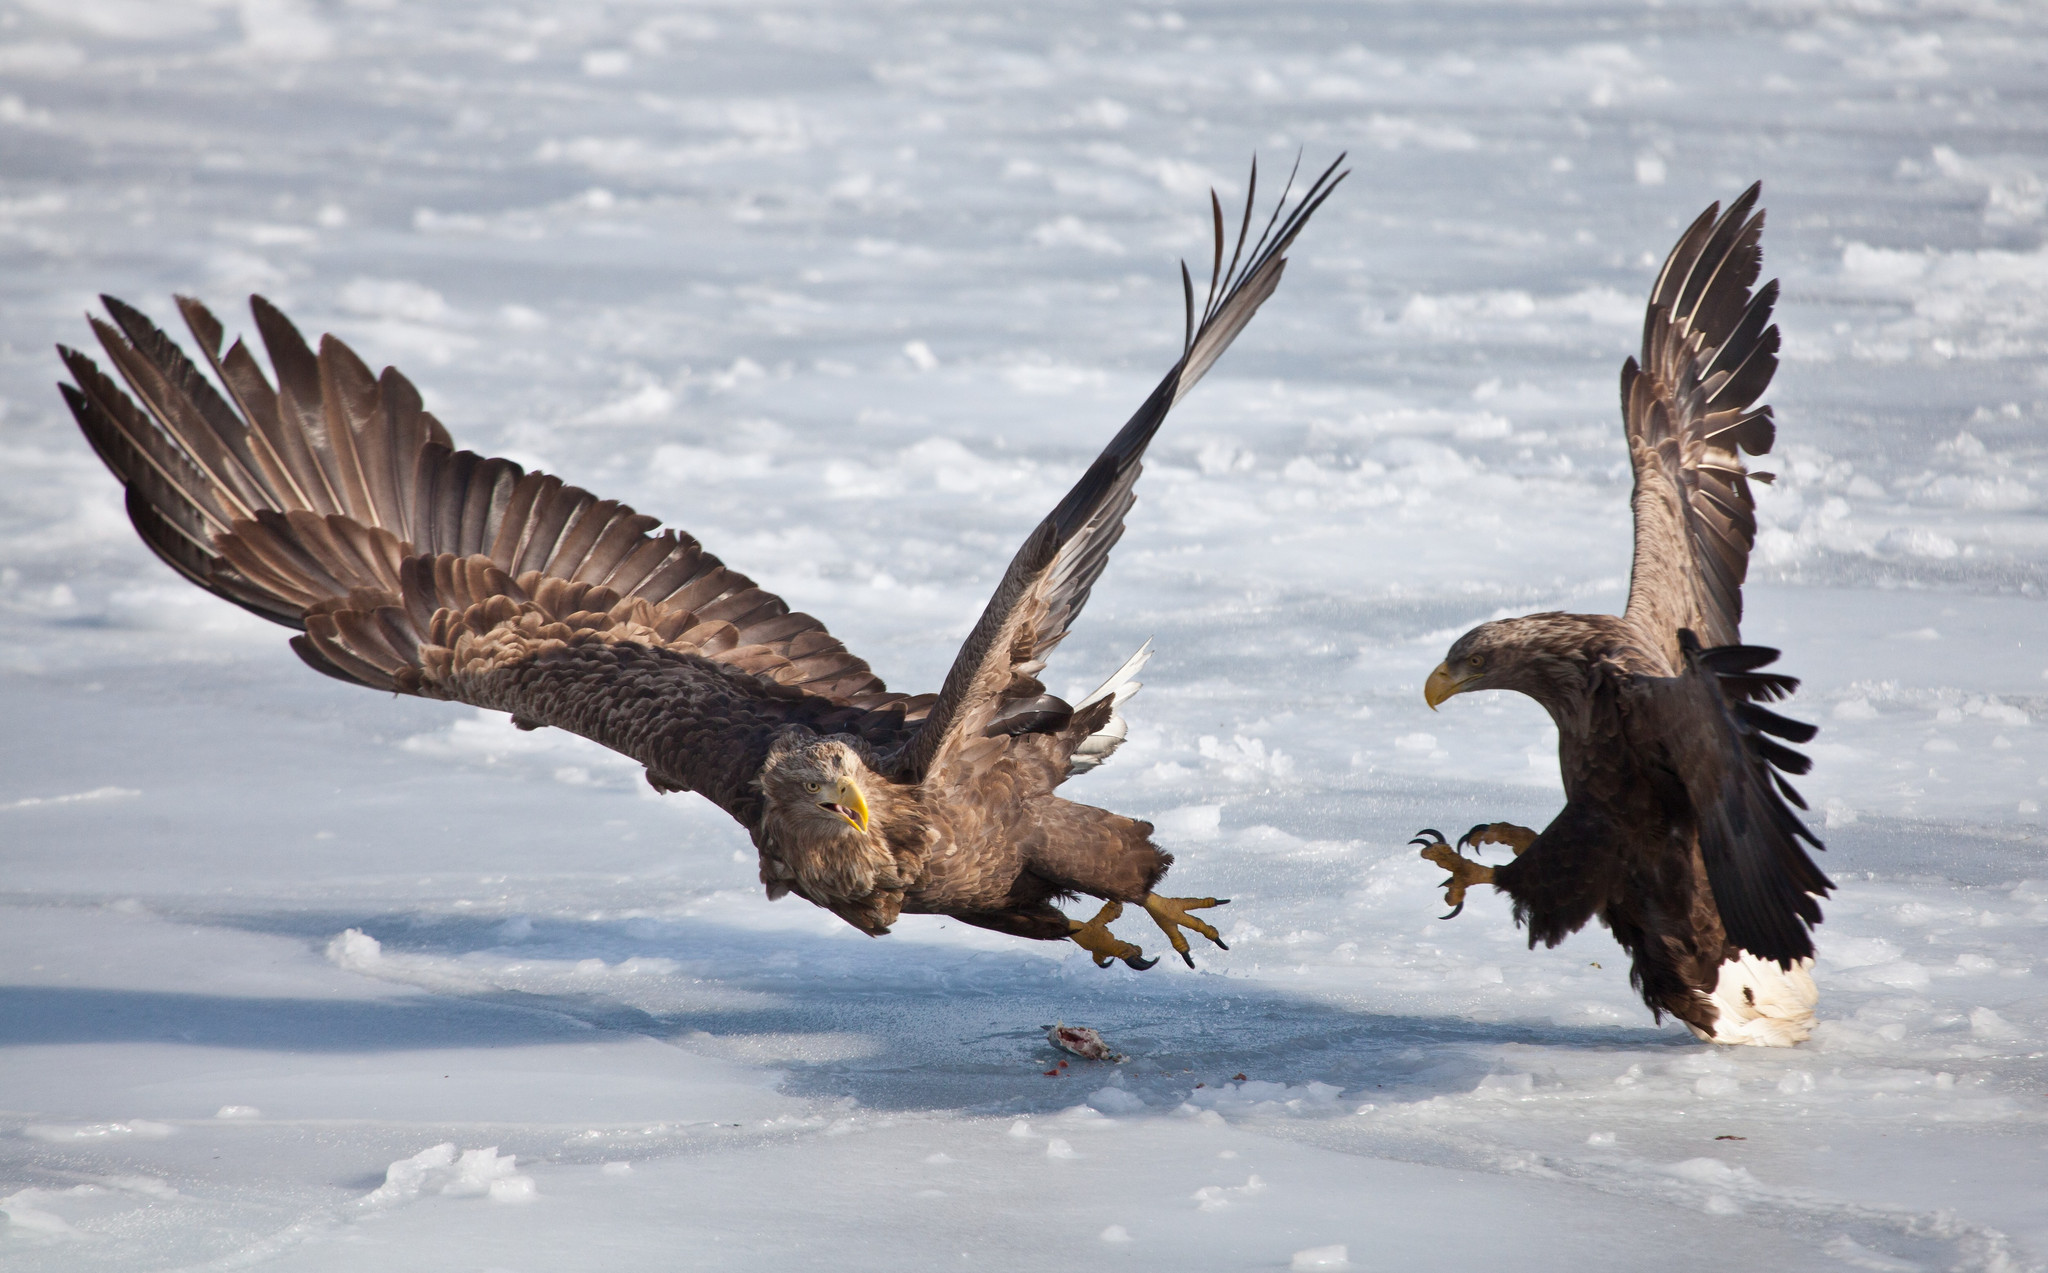 俄罗斯:两只鹰为争一条鱼开打 冰上大战数回合